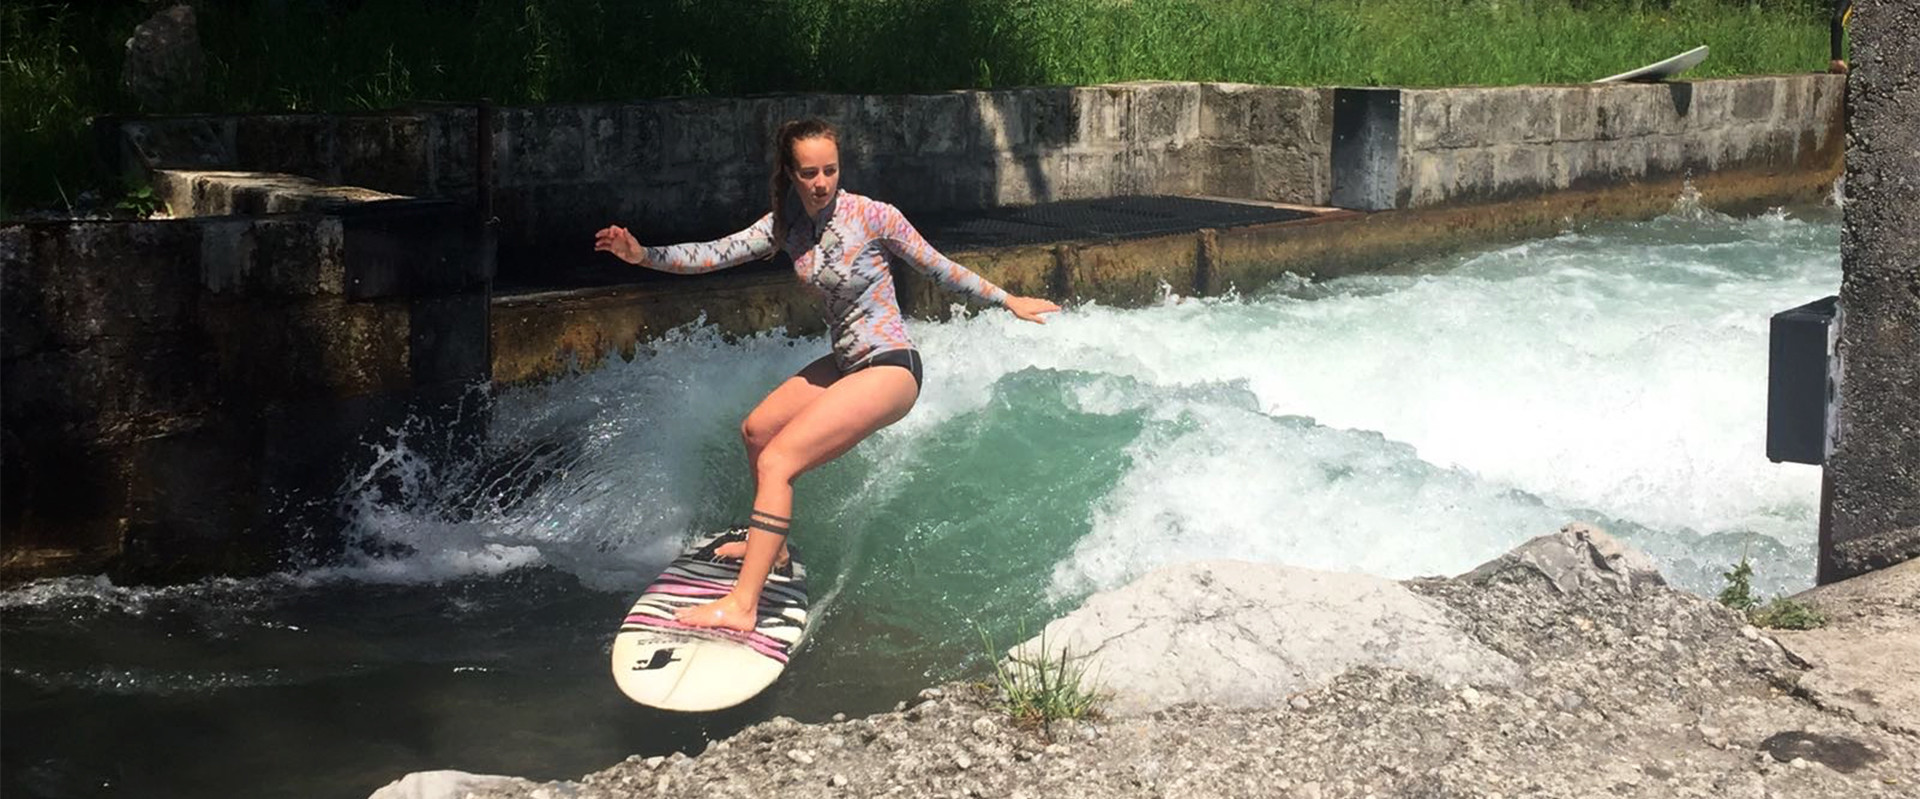 Stefanie Schider surft am Almkanal in Salzburg - Riversurfen in der Stadt